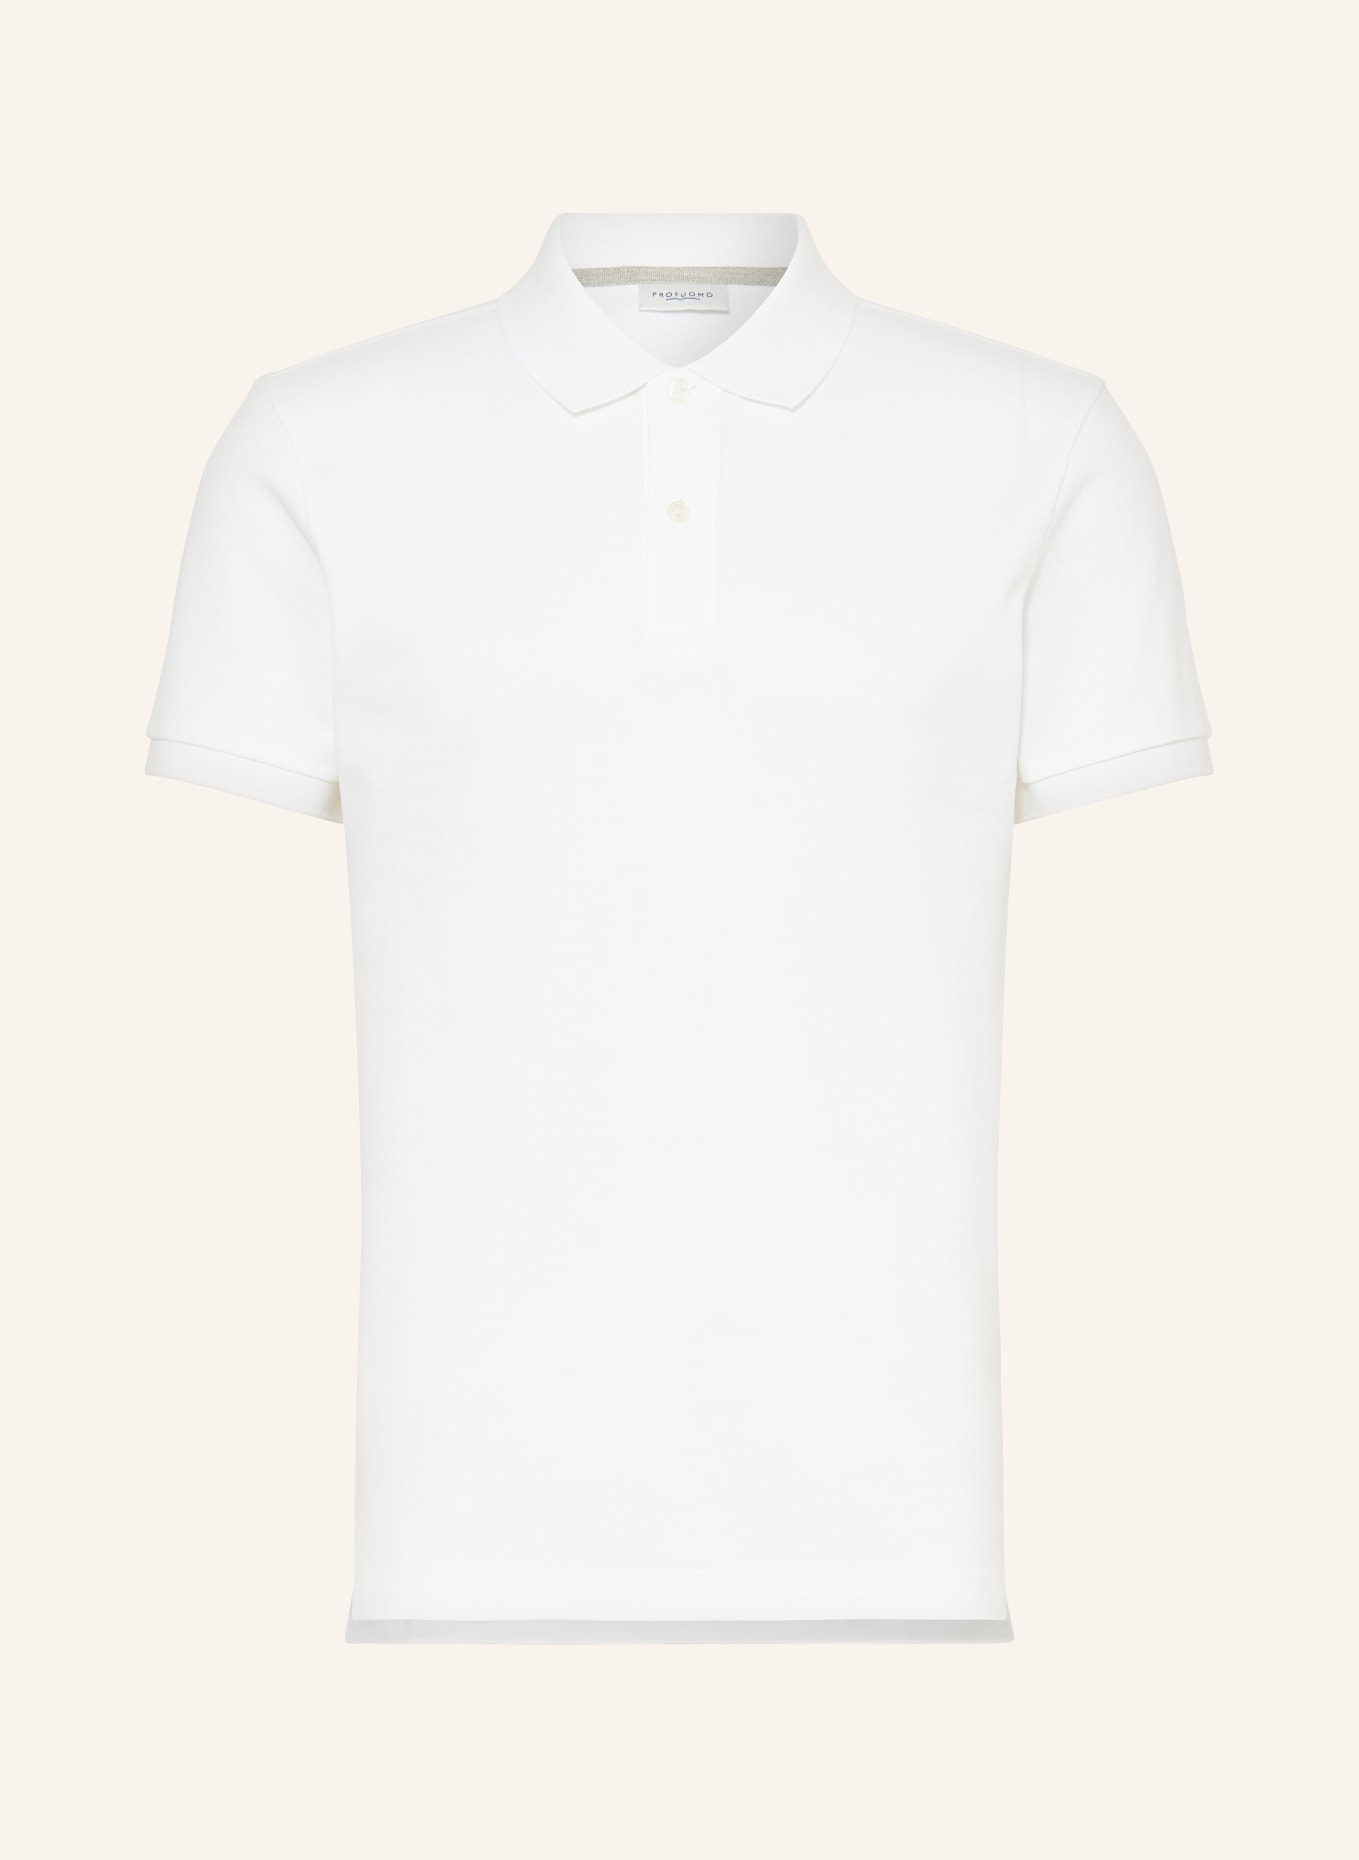 PROFUOMO Piqué-Poloshirt, Farbe: WEISS (Bild 1)